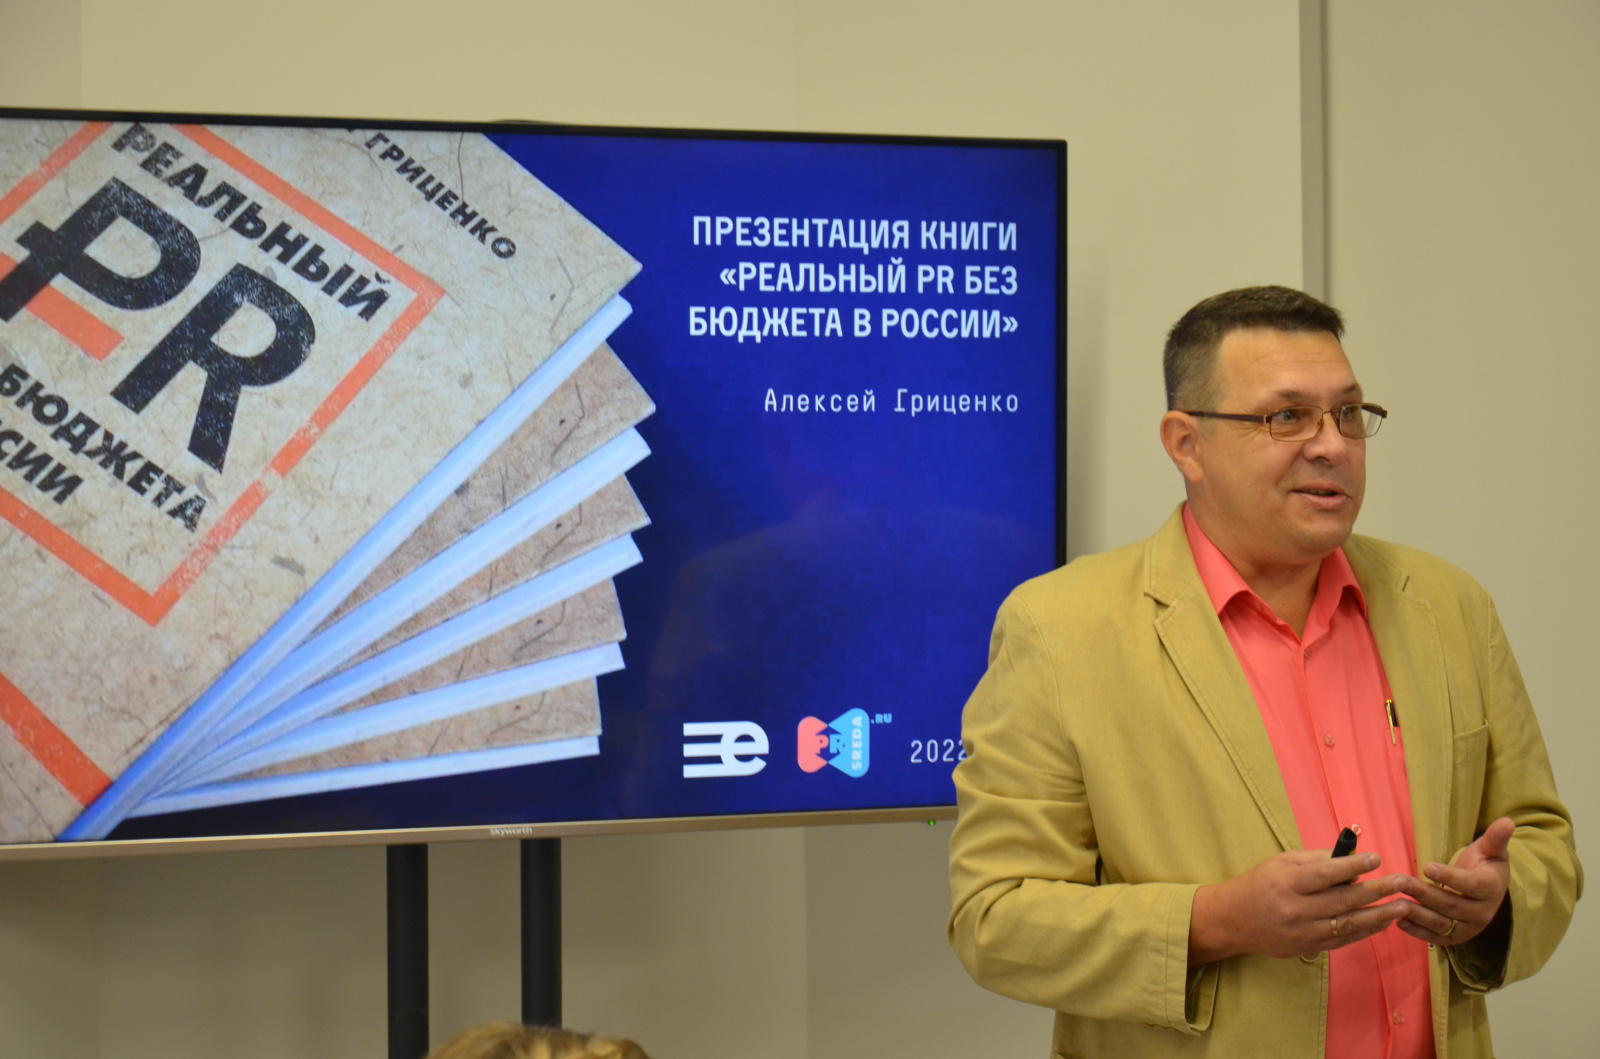 В международном холдинге «ЕвроМедиа» состоялась презентация книги Алексея Гриценко «Реальный PR без бюджета в России»